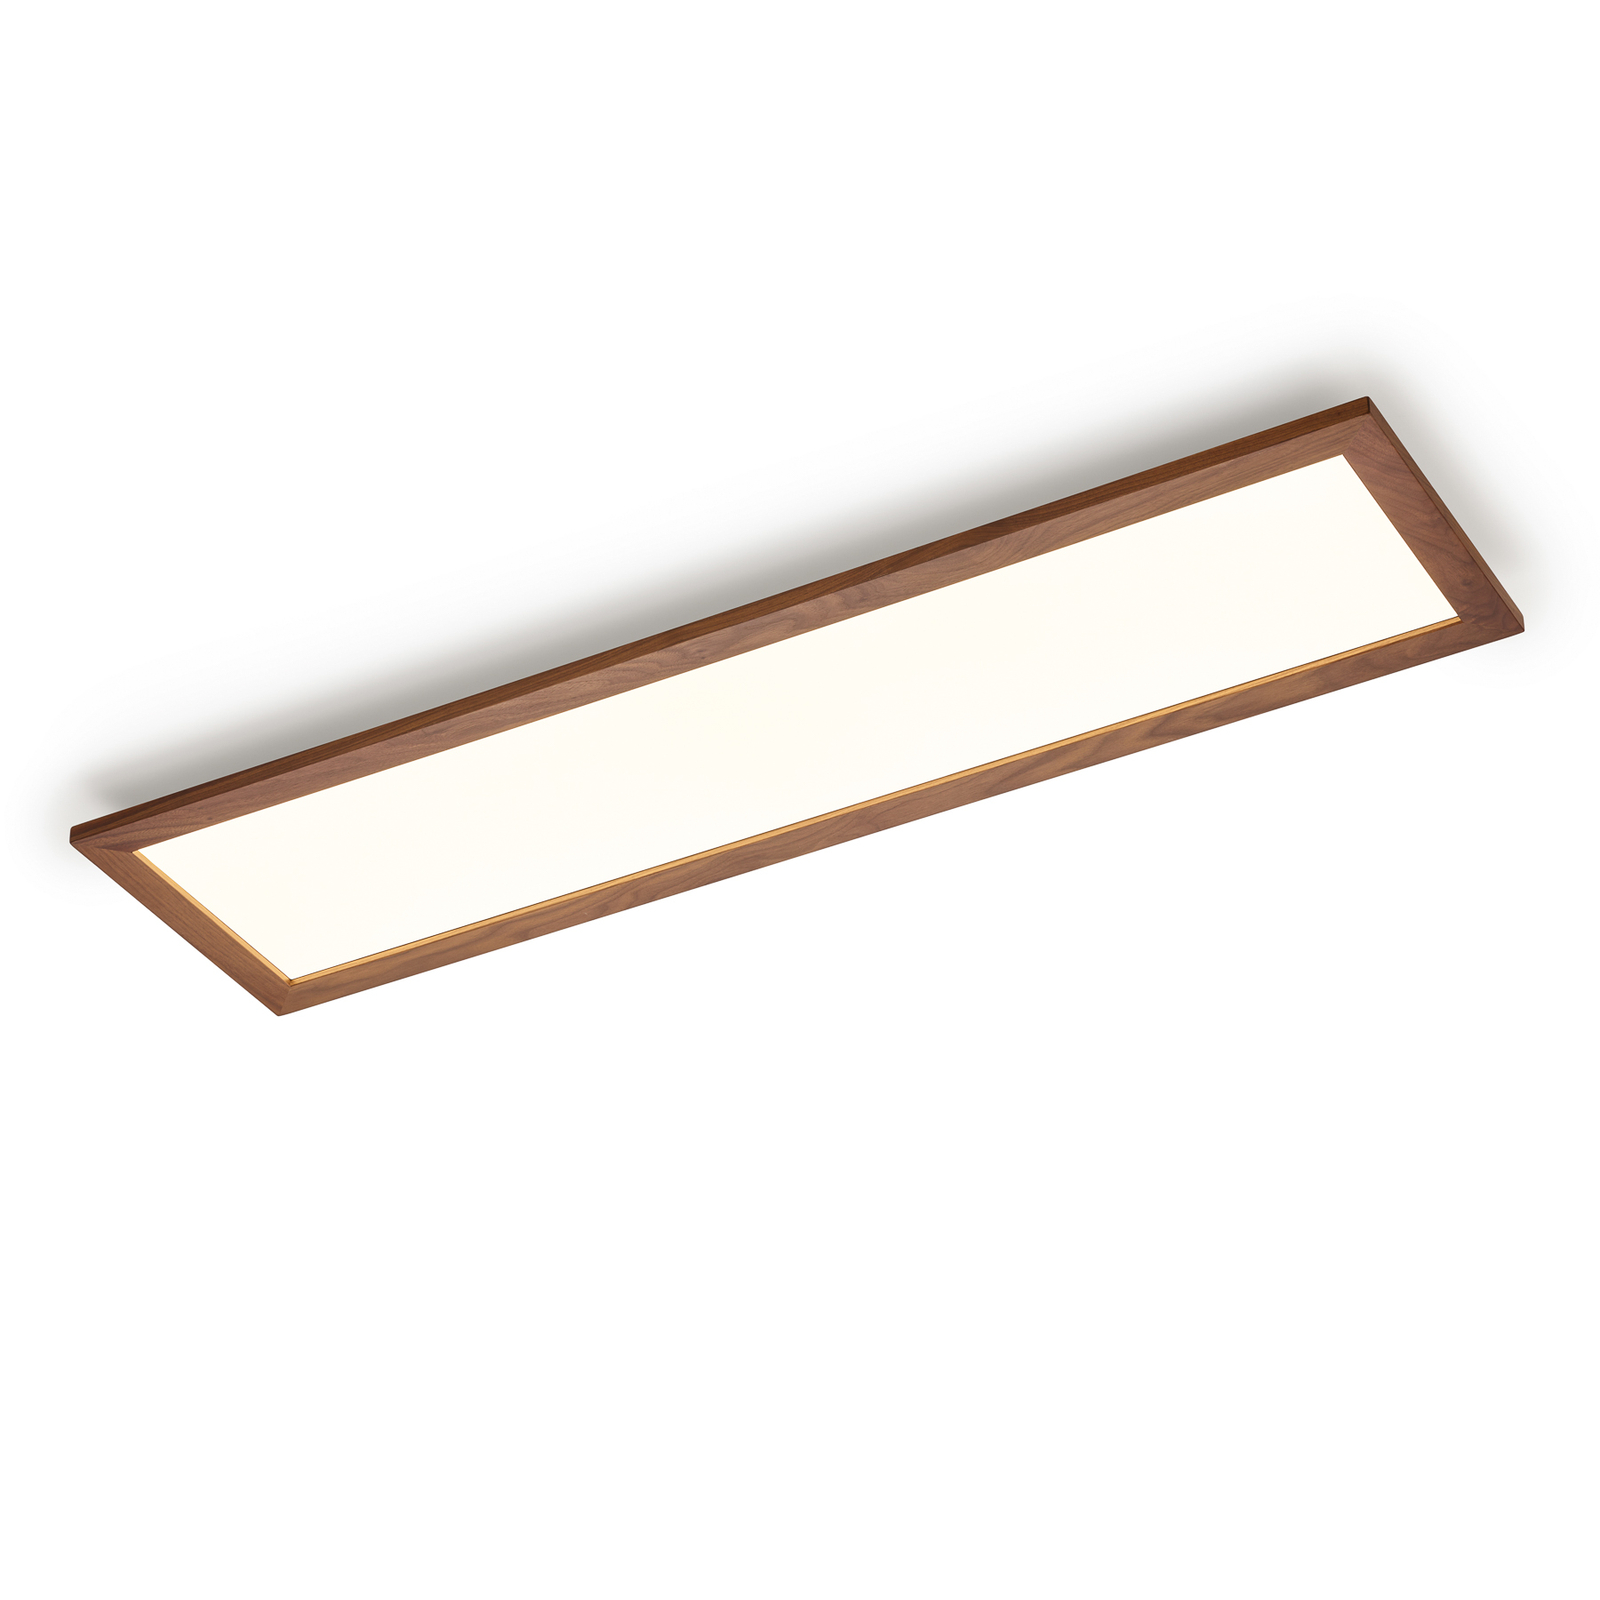 Quitani Aurinor LED-panel, valnød, 125 cm